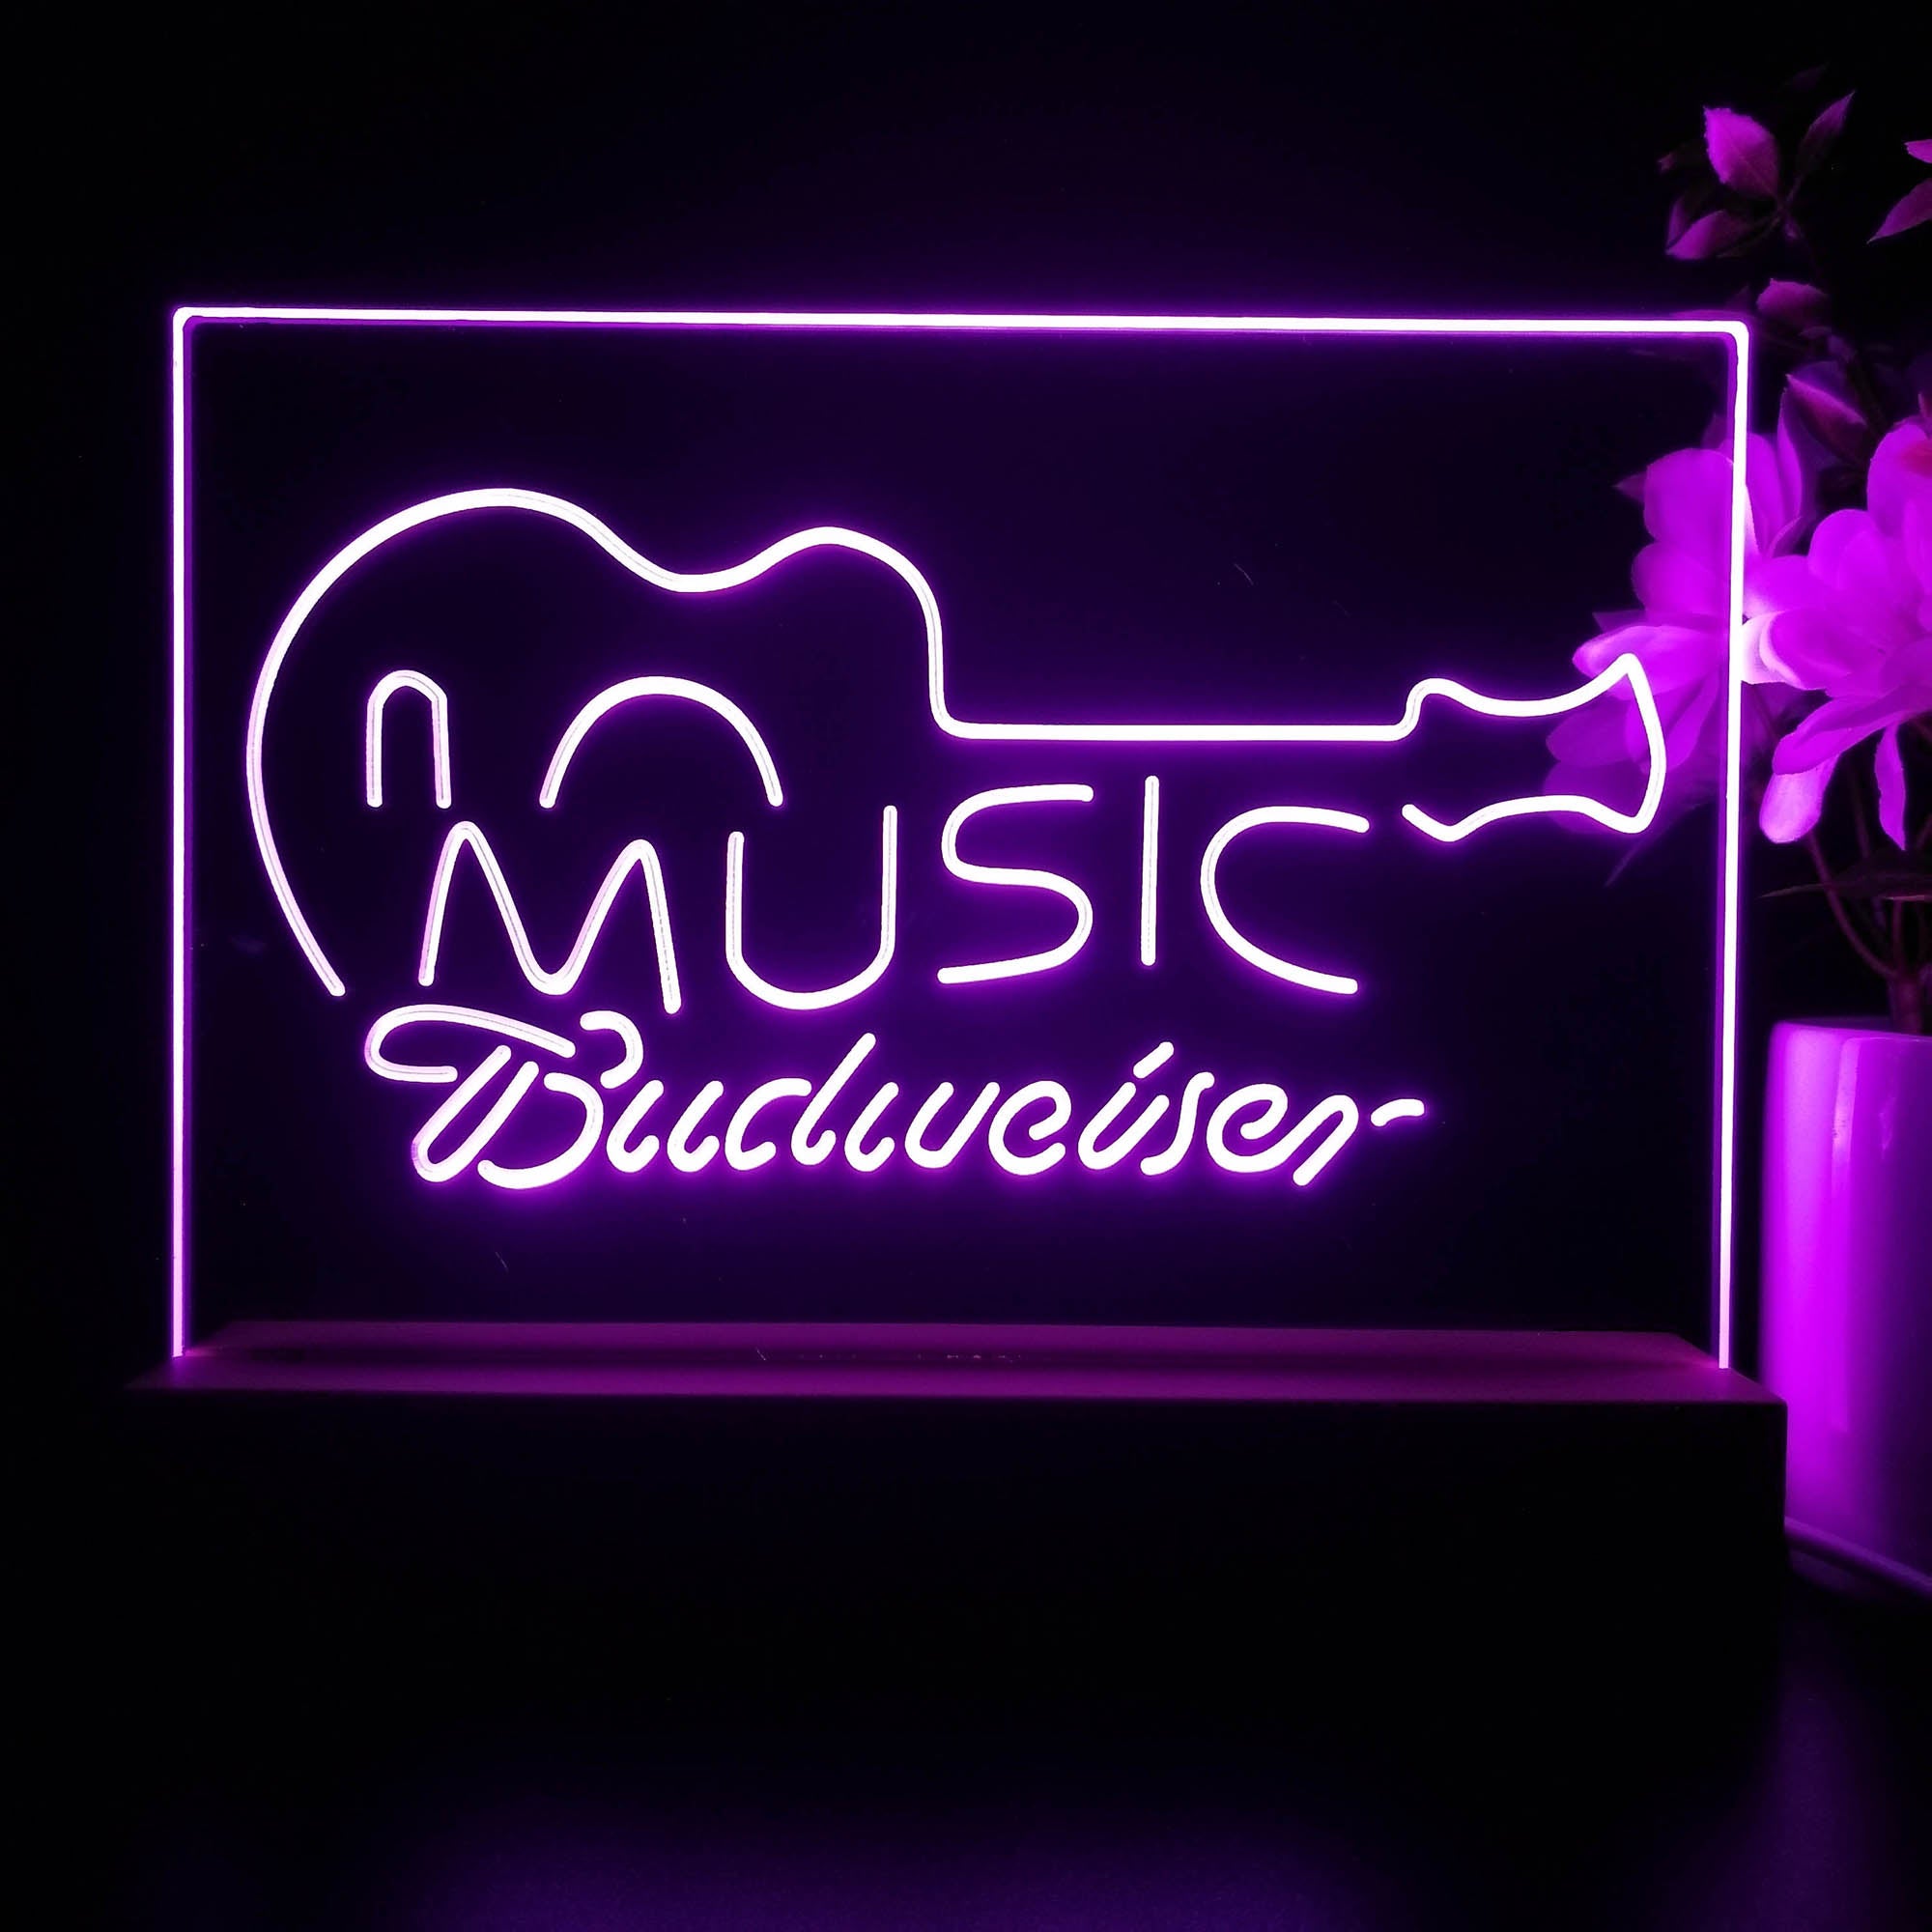 Budweiser Music Guitar Neon Sign Pub Bar Lamp